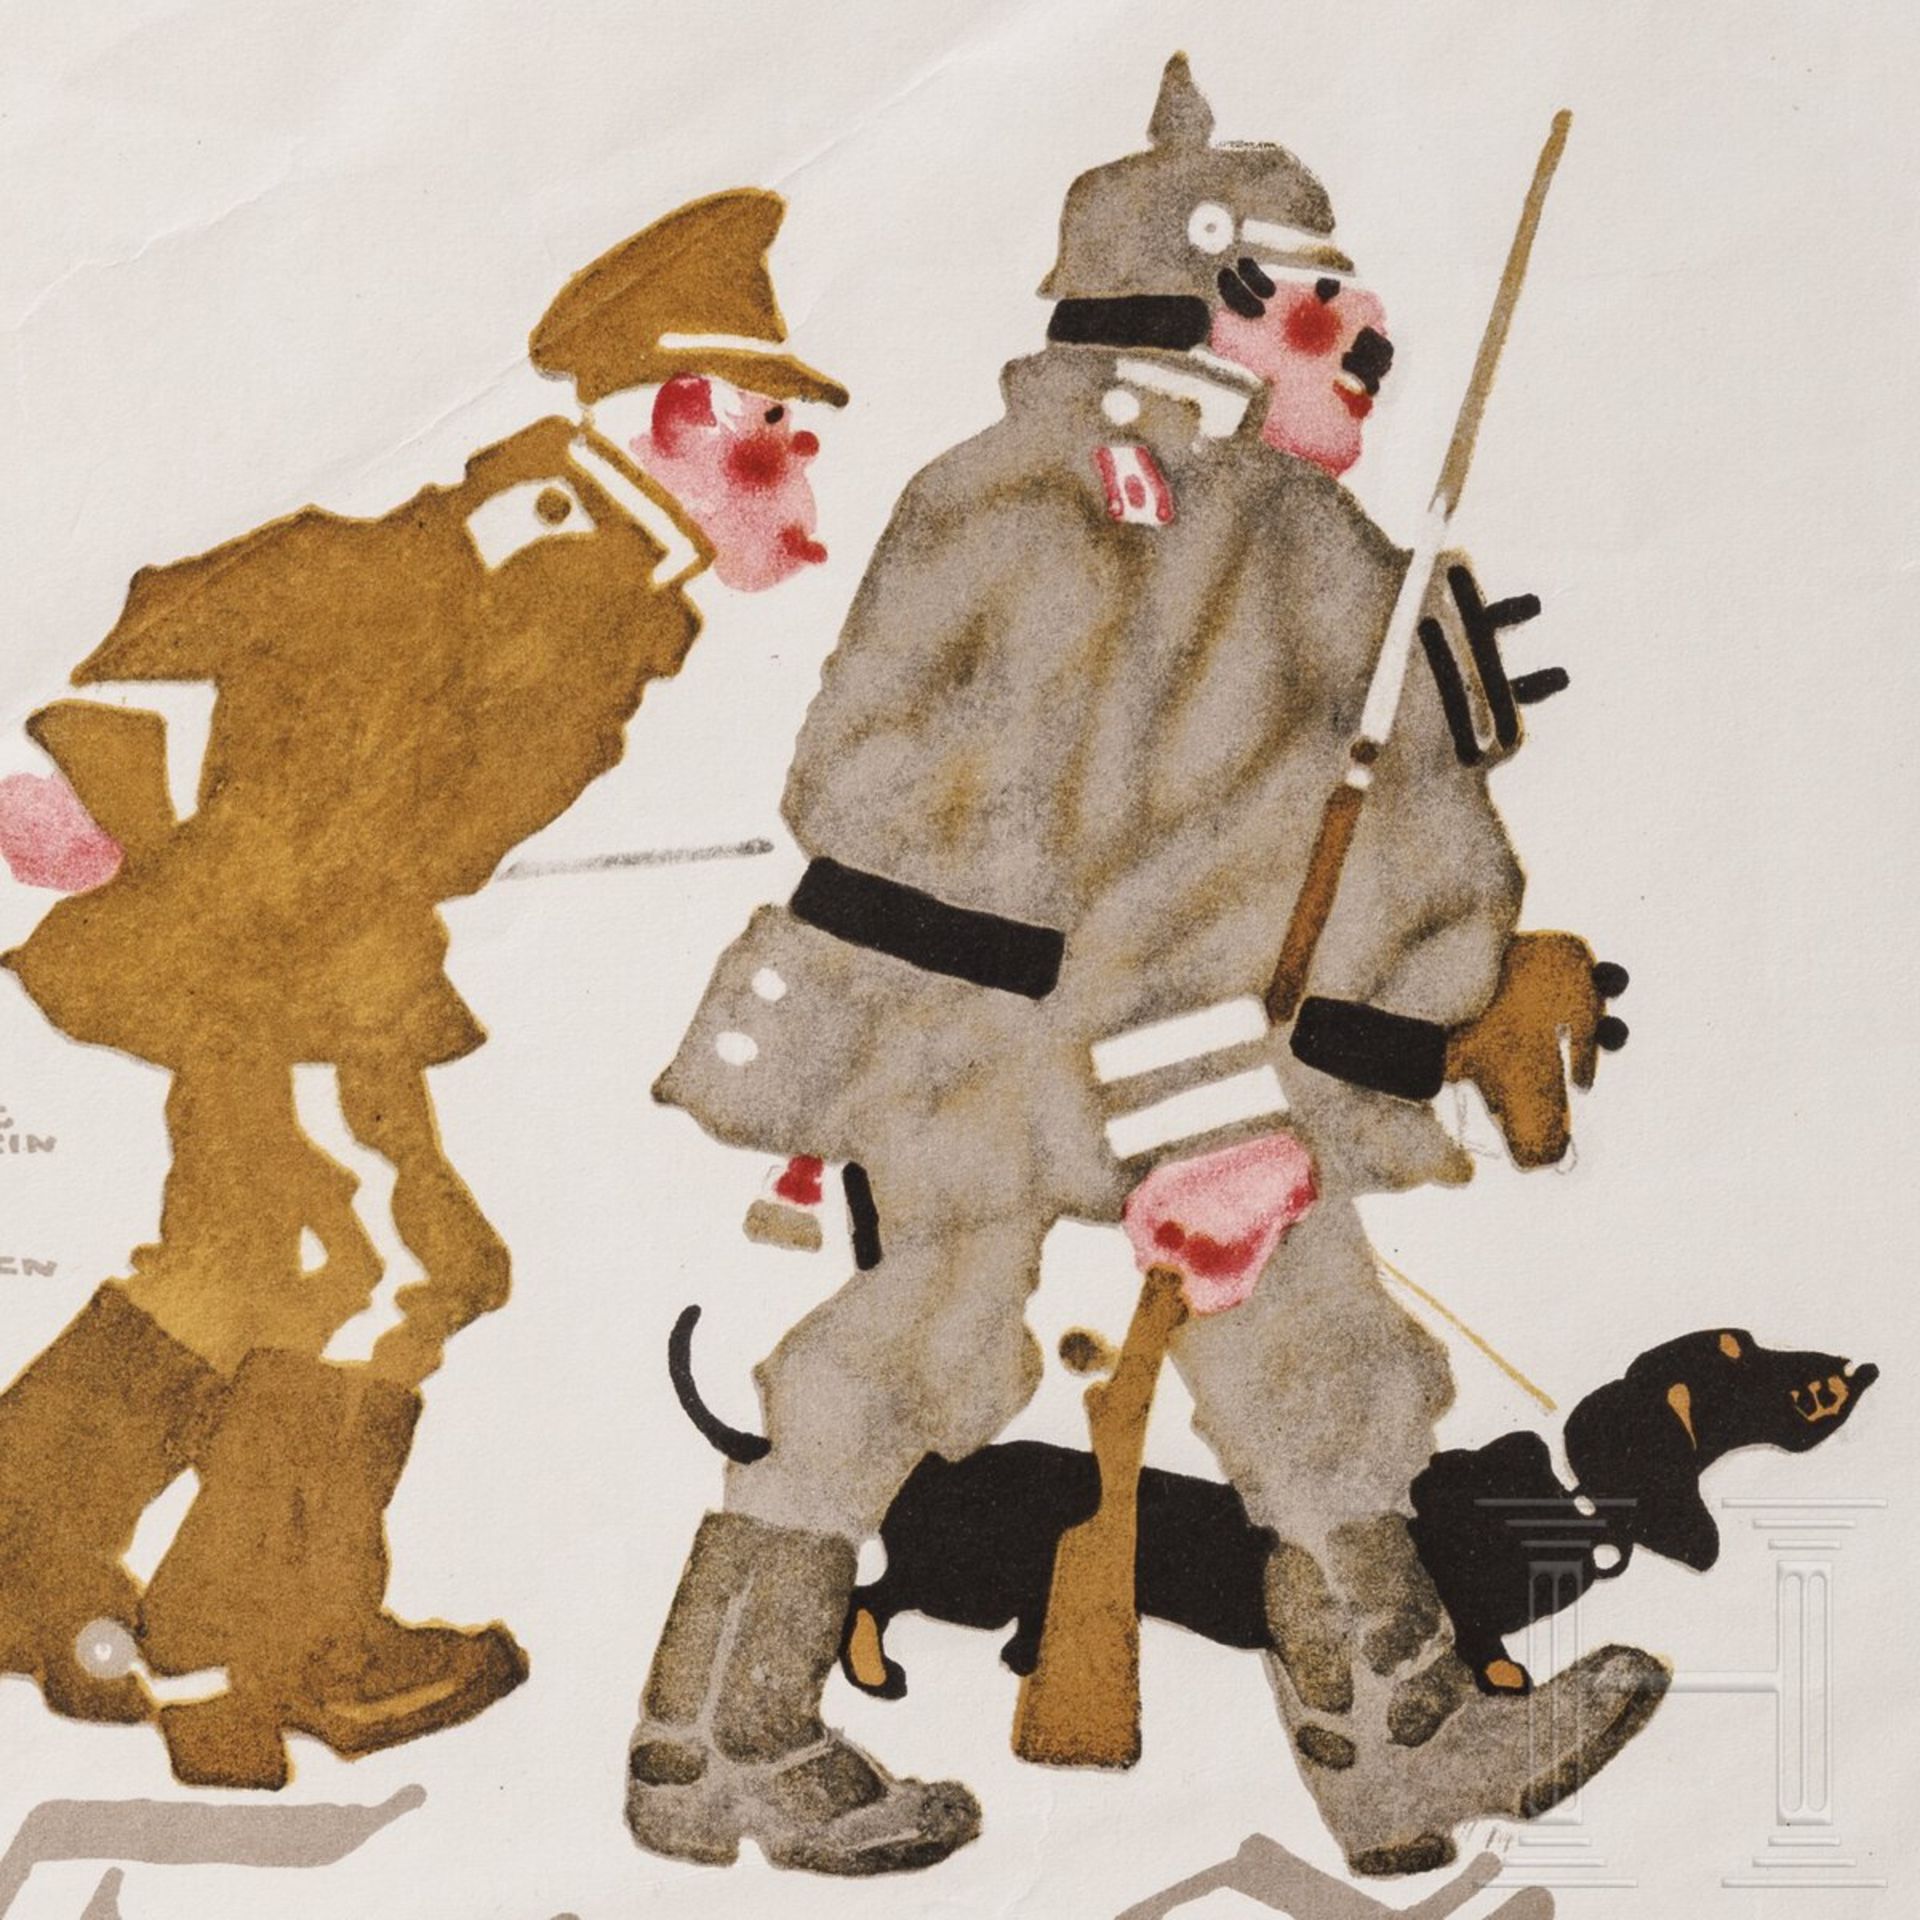 Ludwig Hohlwein (1874 - 1949) - Werbeplakat "Folgen Sie uns" für die Aktiengesellschaft für Kunstdru - Image 2 of 2